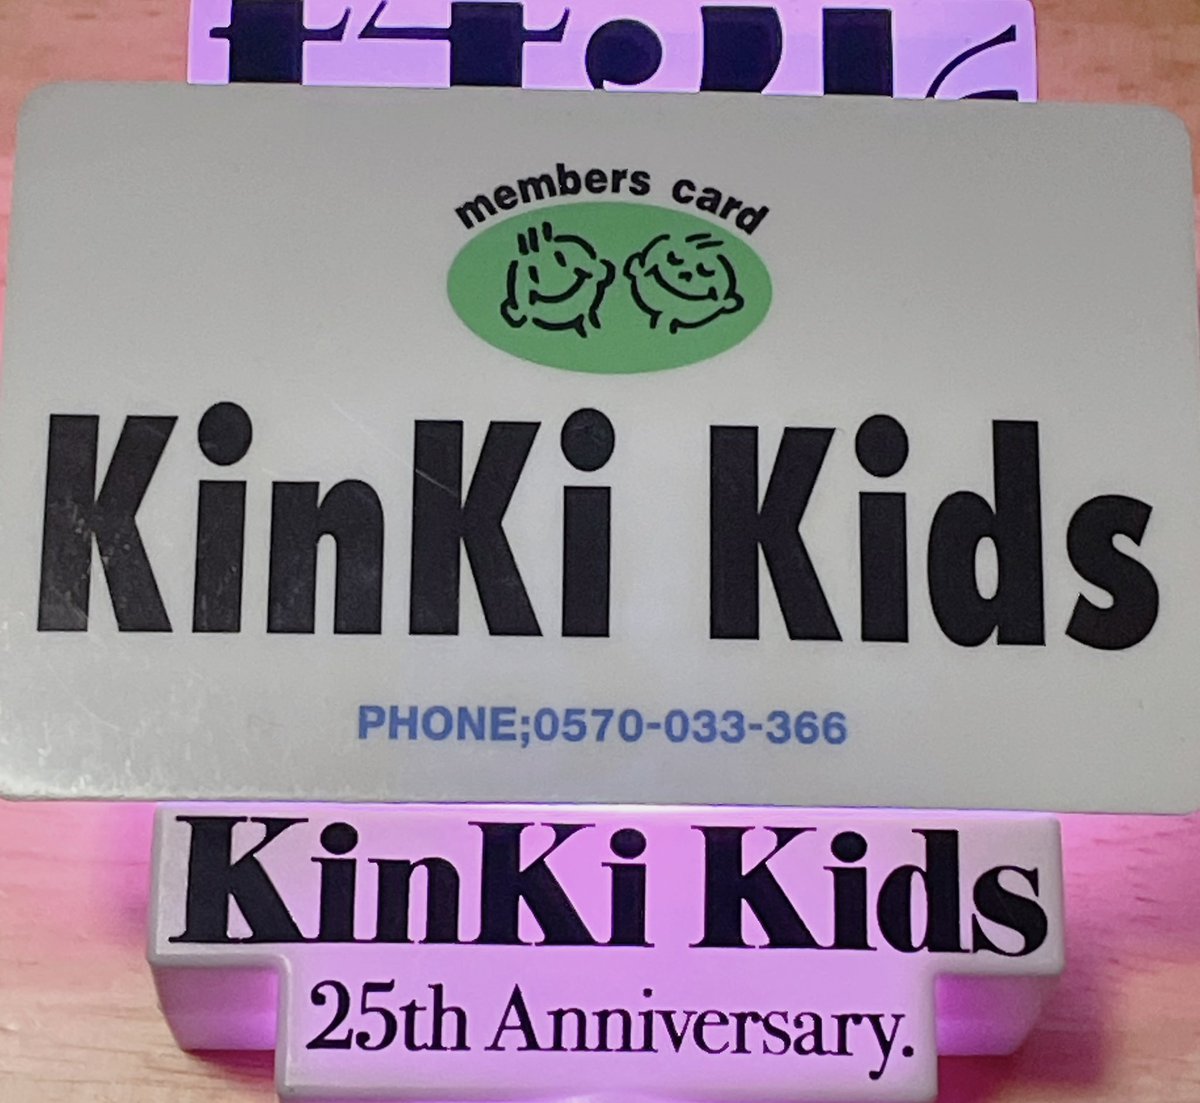 今日でKinKi KidsFC閉鎖だね
会員としては4年半と短かったけど
昔からずっと大好きだったし
これからもずっと大好きです💙❤️
明日5/1は私の誕生日
バースデーカードが届かないのは寂しいけど
日付が変わるギリギリに動画みるよ😭
これからも付いていきます💙❤️

 #KinKiKidsFCありがとう 
#KinKiKids